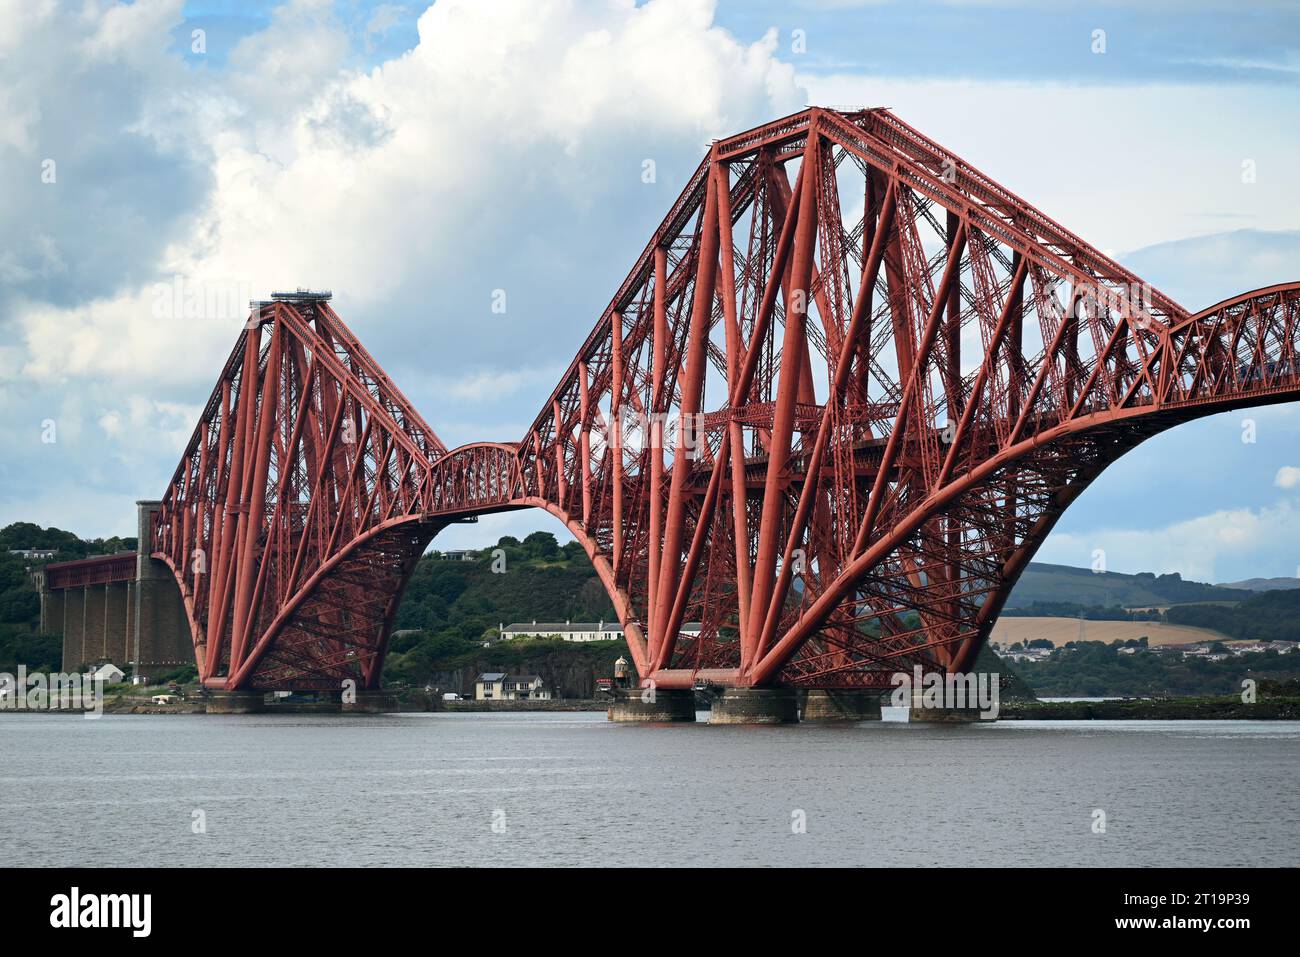 Il ponte ferroviario Forth nel Queensferry consente alla ferrovia di attraversare il Firth of Forth vicino a Edimburgo, in Scozia. Foto Stock